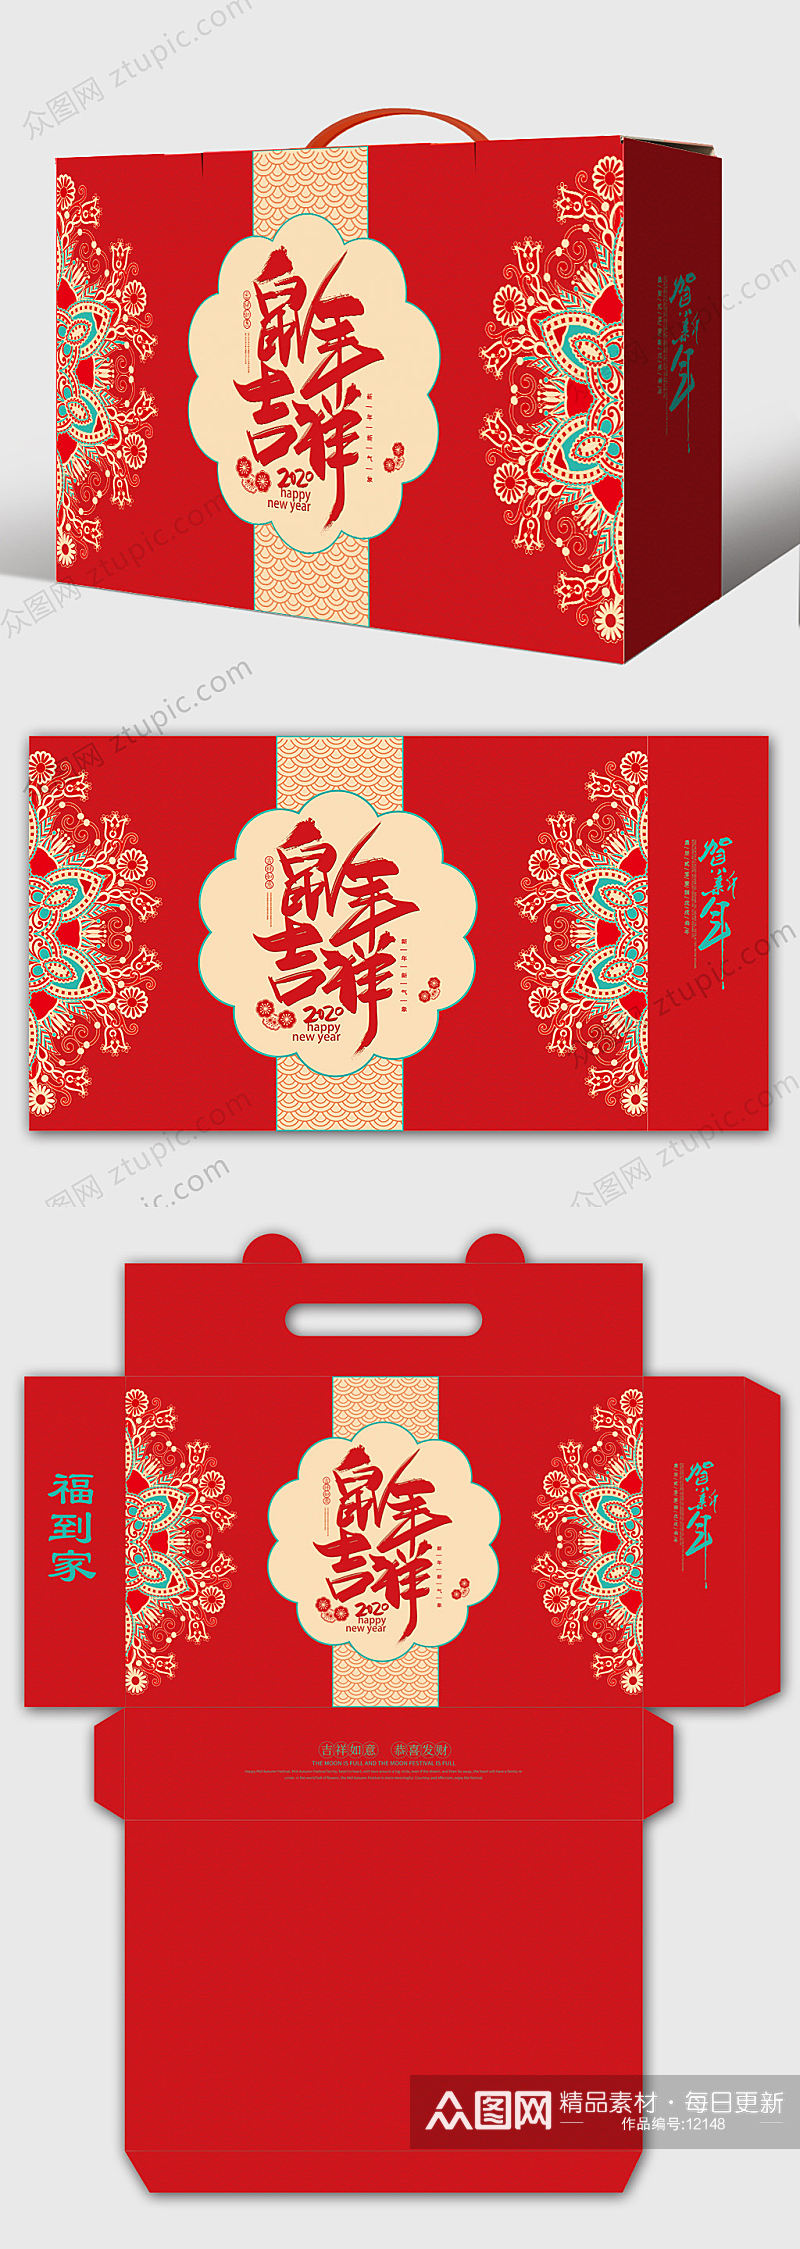 花纹鼠年吉祥新年礼盒包装设计模板素材